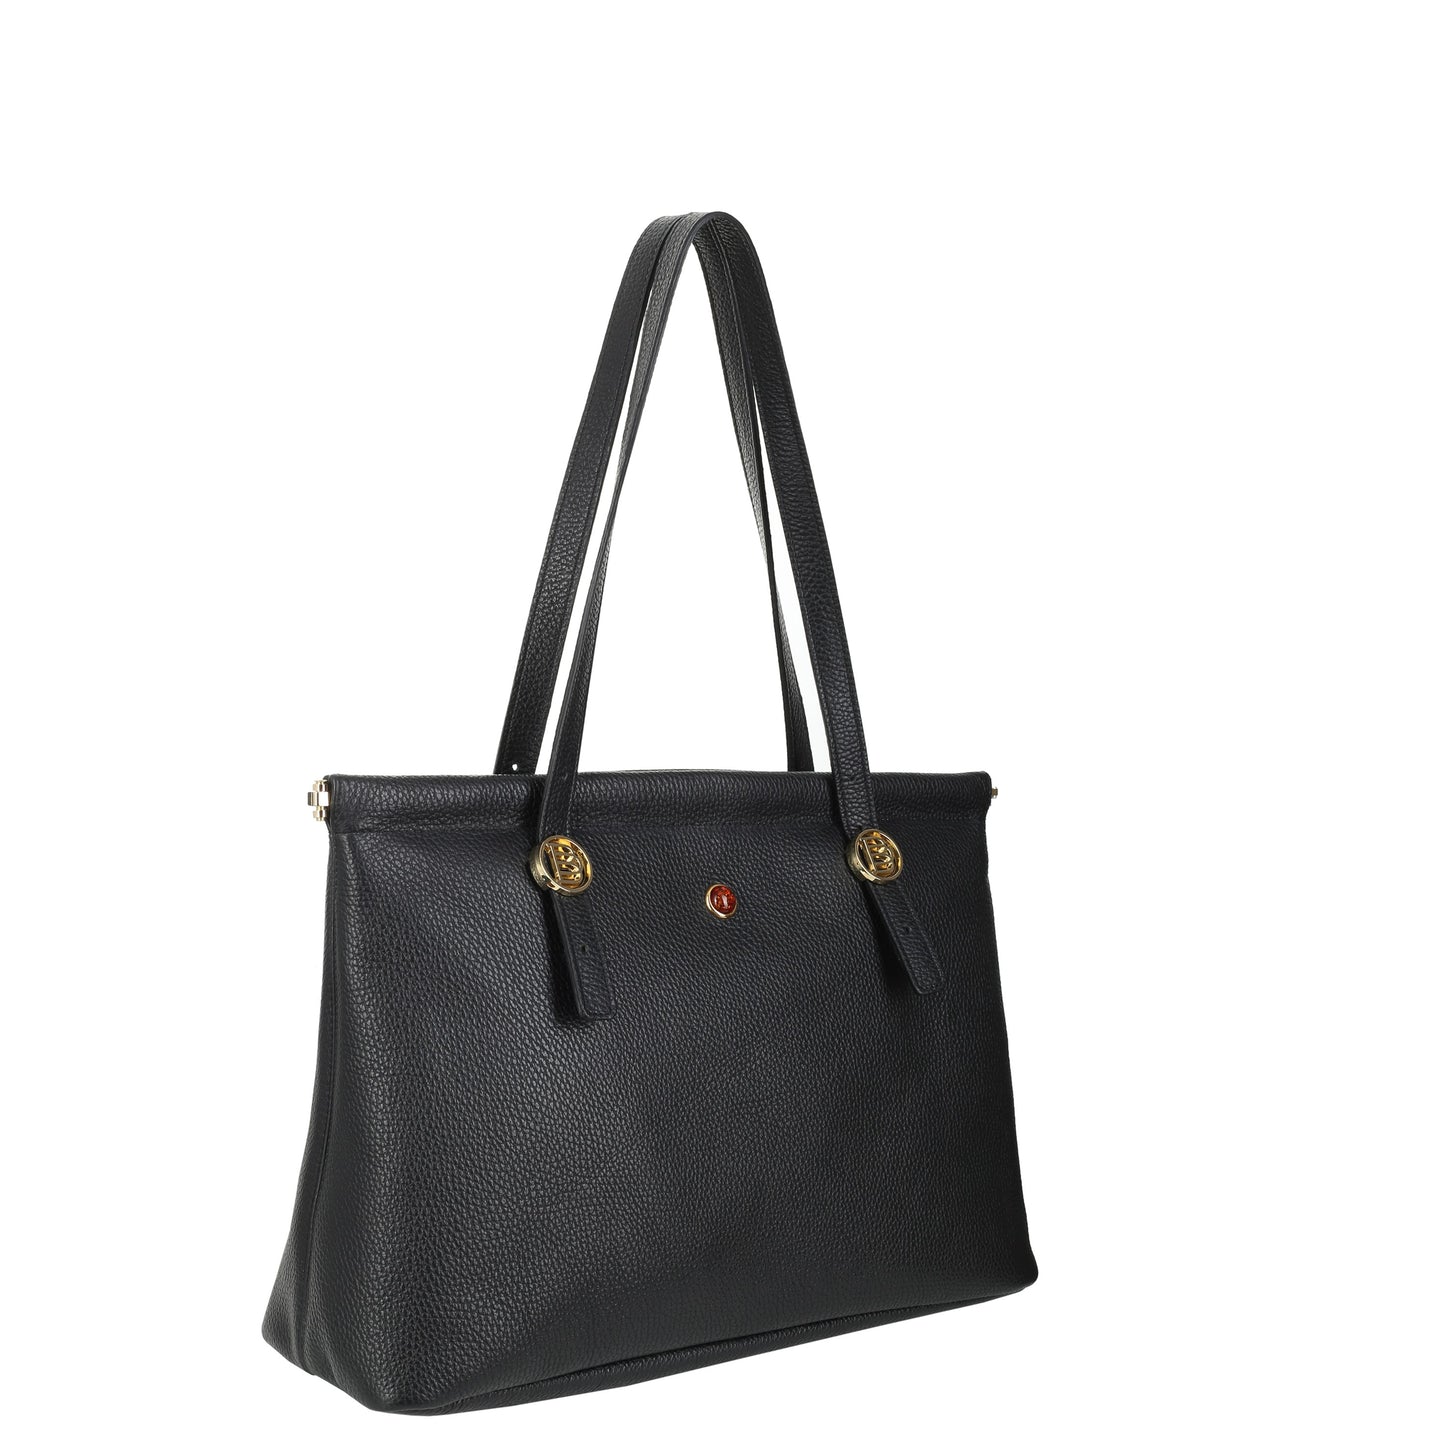 COOTE DESERT FLOTER BLACK women's leather handbag